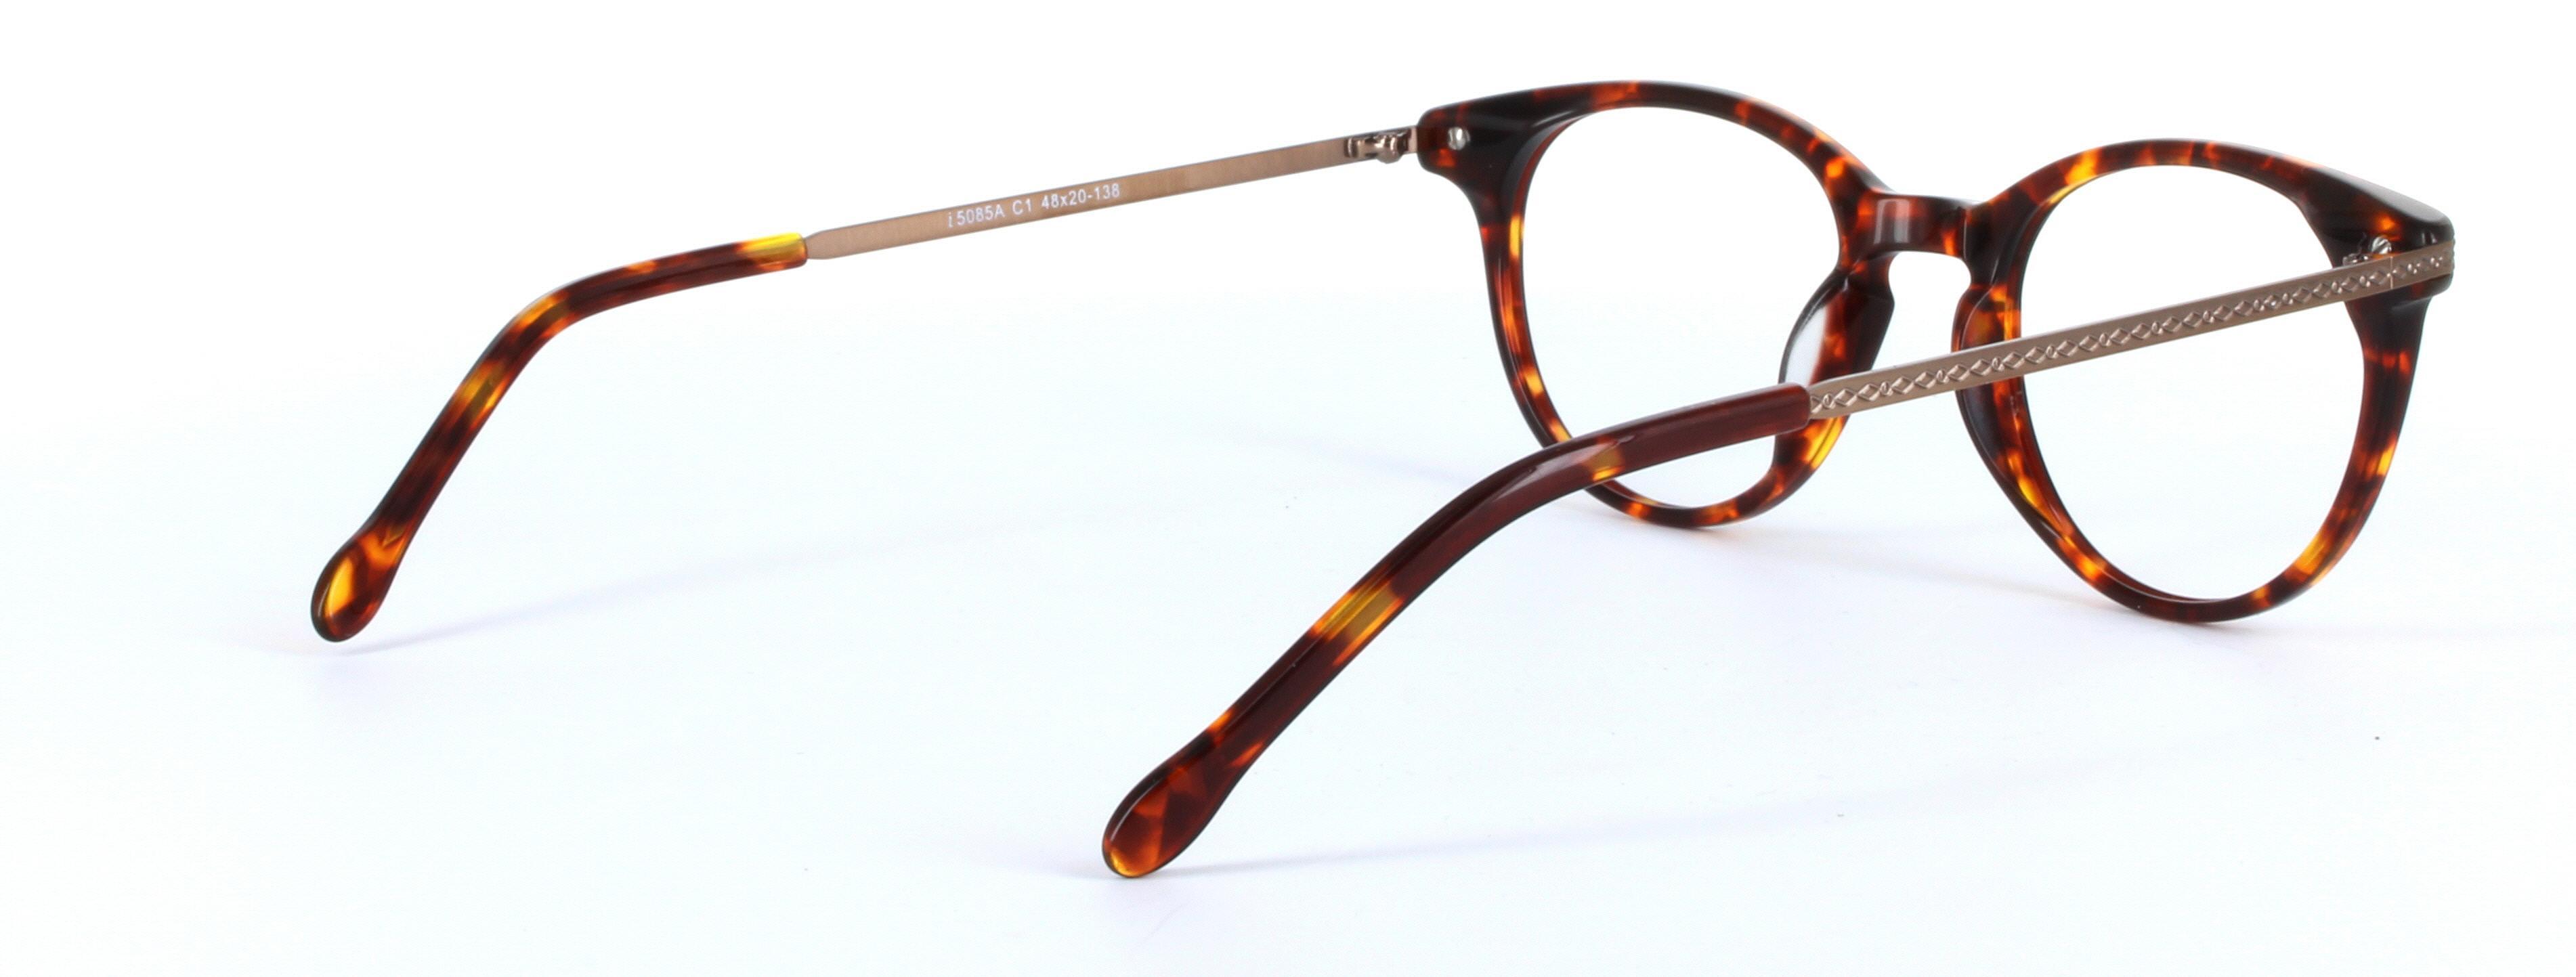 Amanda Tortoise Full Rim Round Plastic Glasses - Image View 4